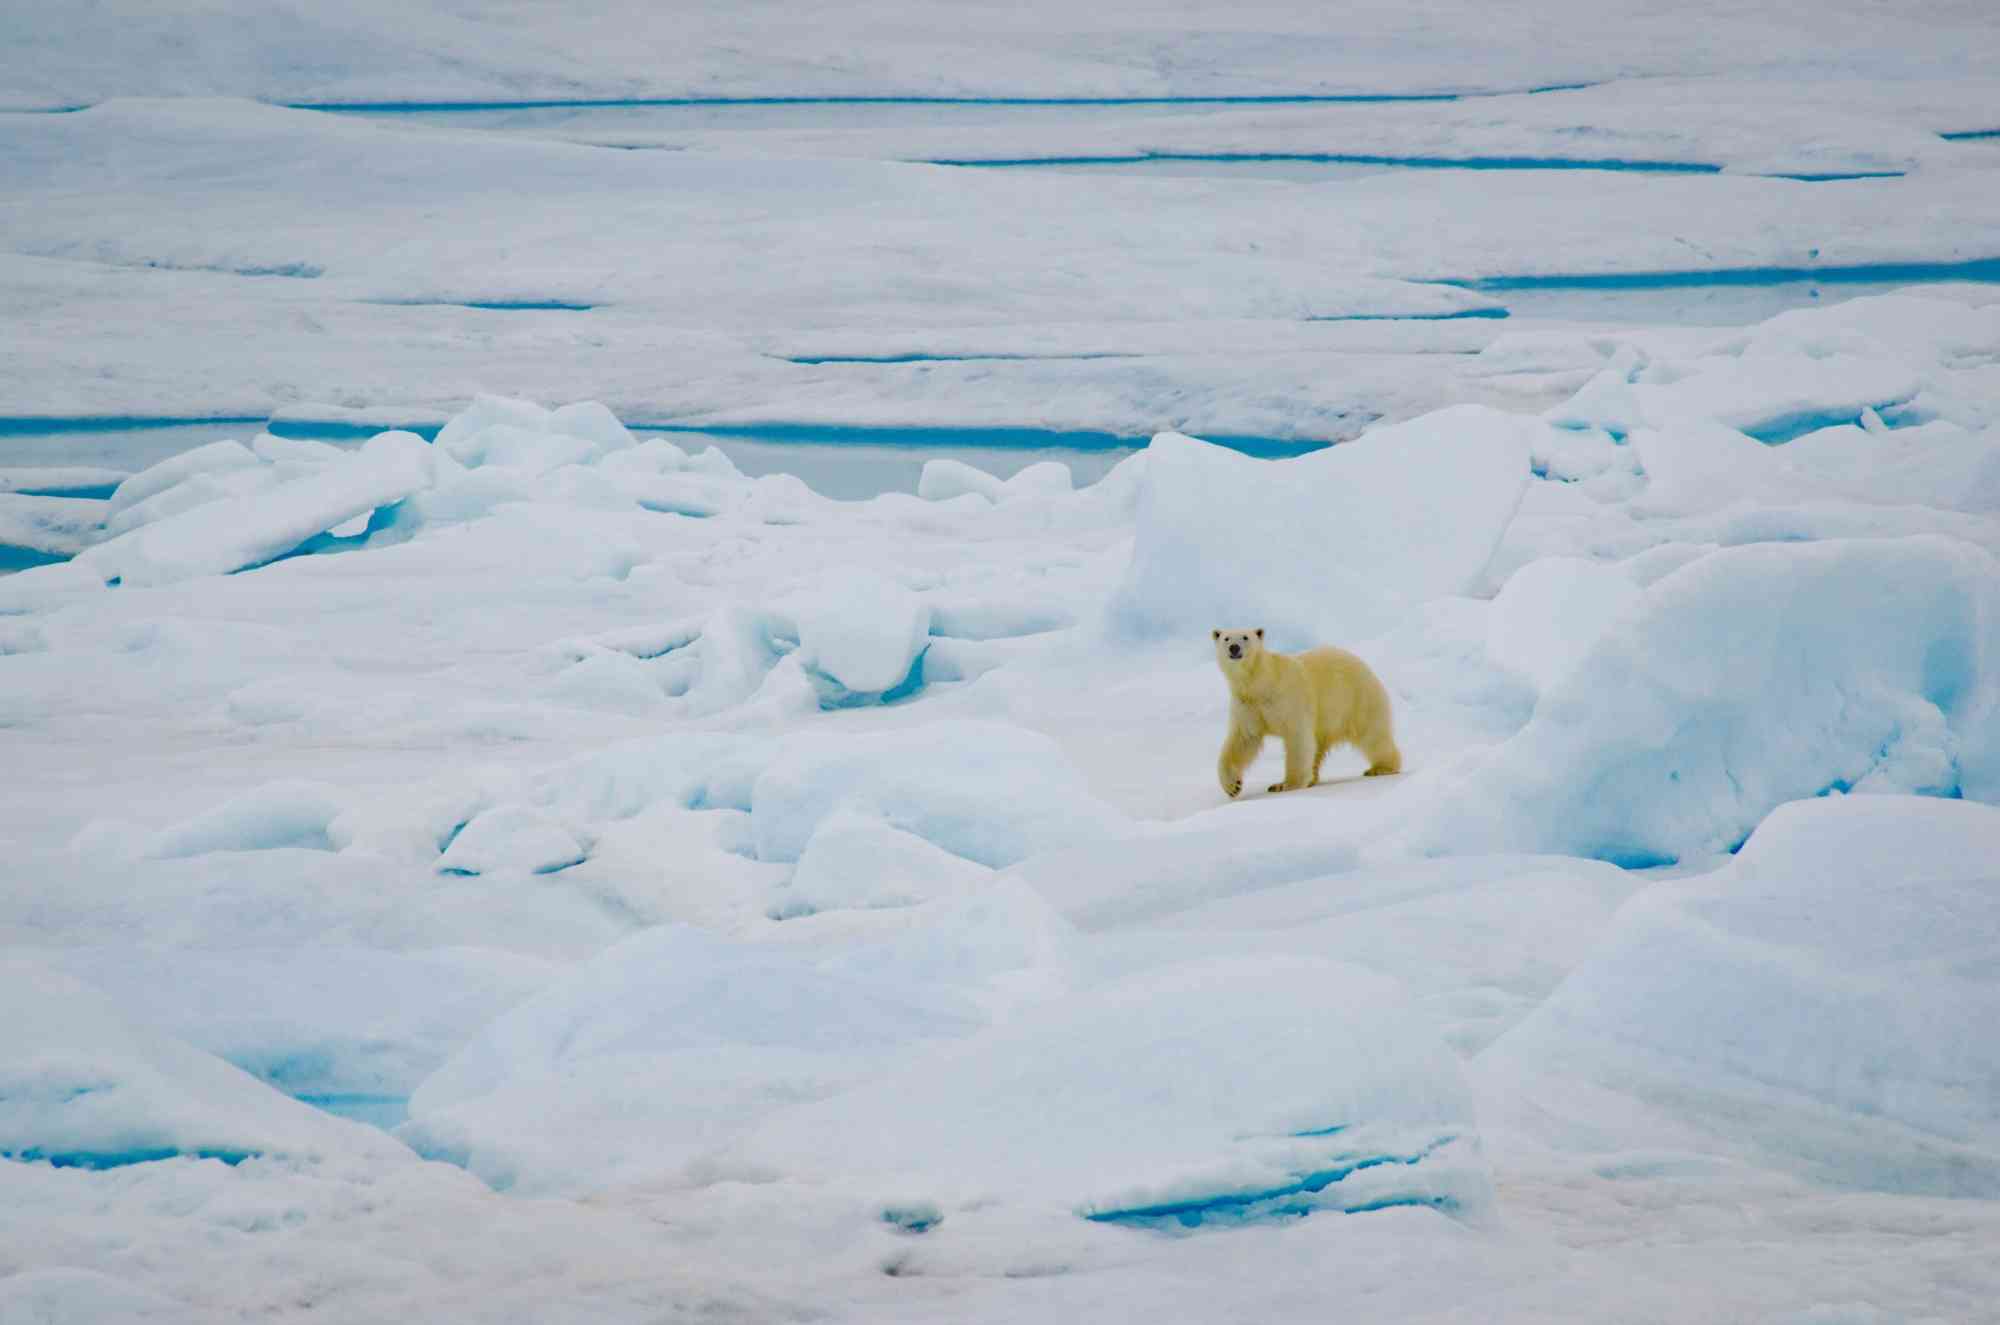 Polar bear Alaska, Chukchi Sea area